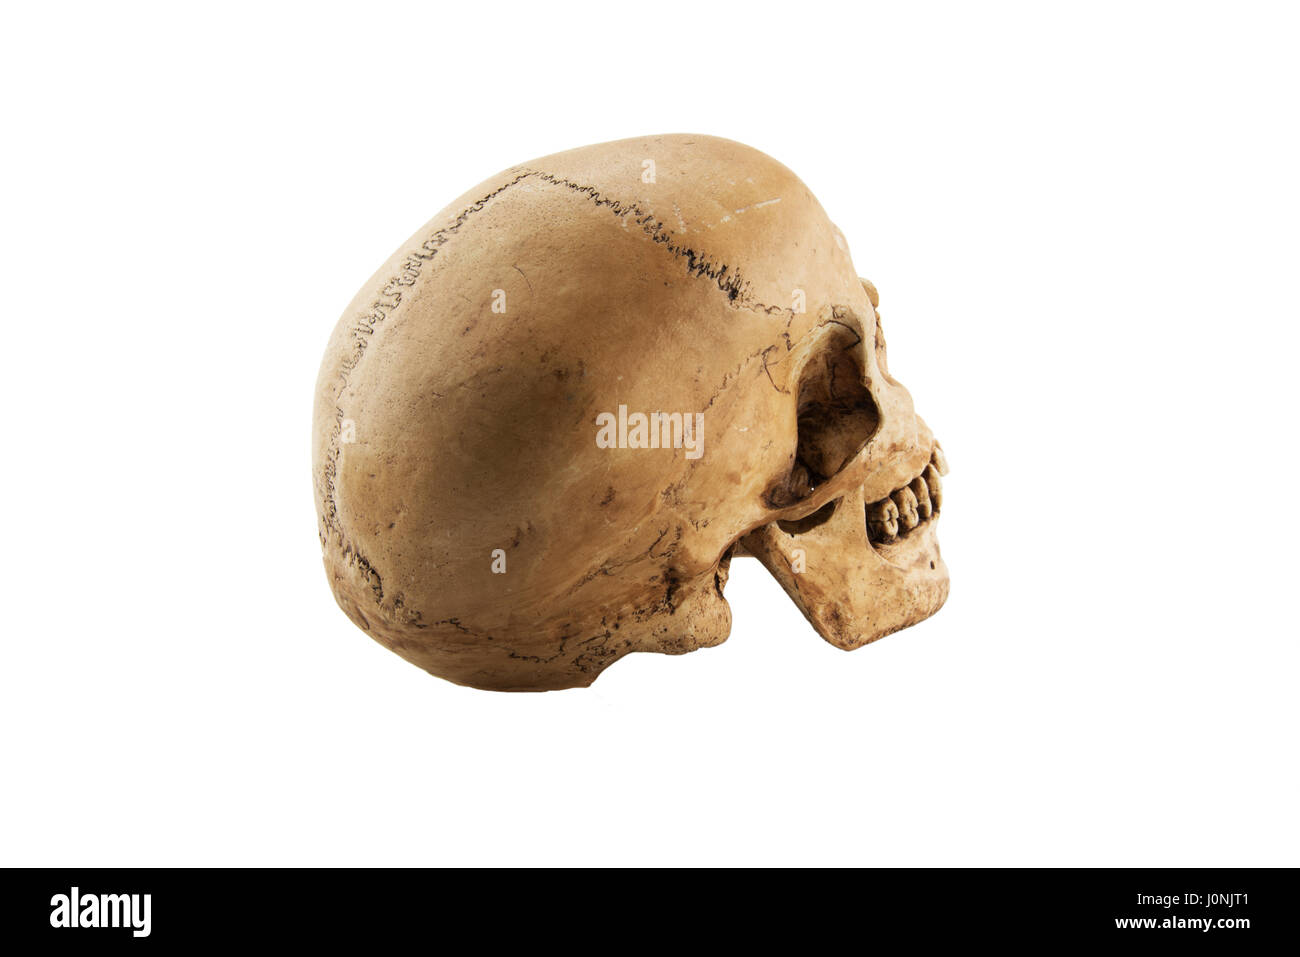 Cranio umano isolato su sfondo bianco Foto Stock